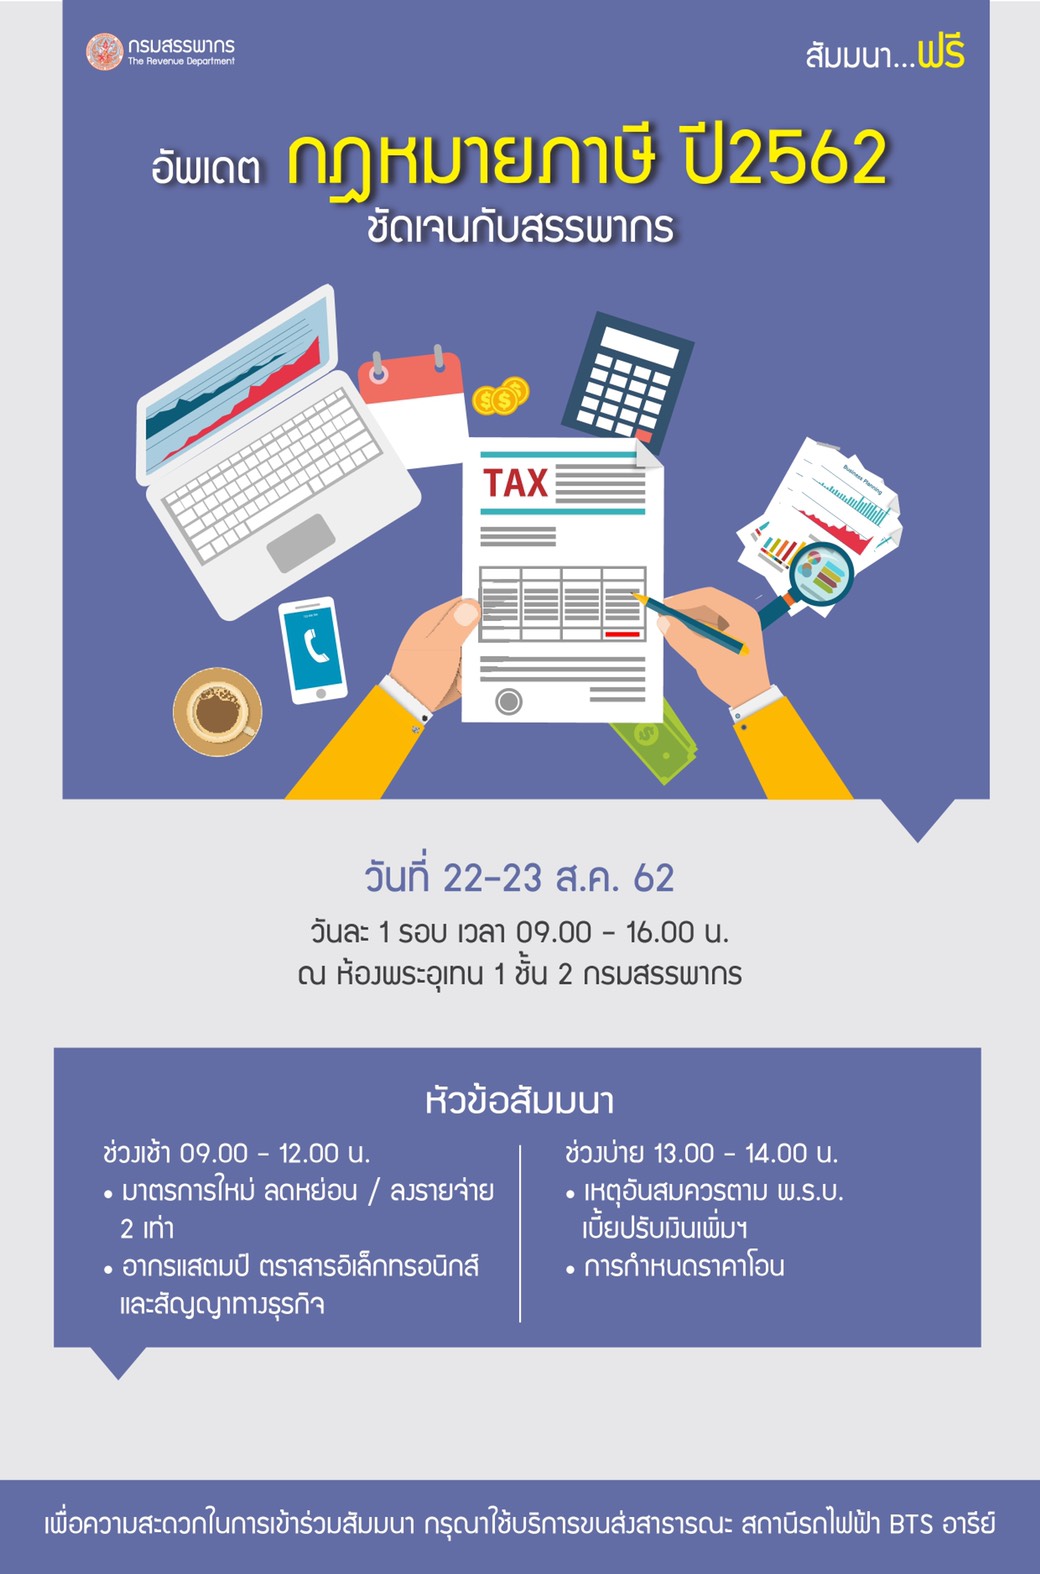 ภาษีกับธุรกิจ SMEs